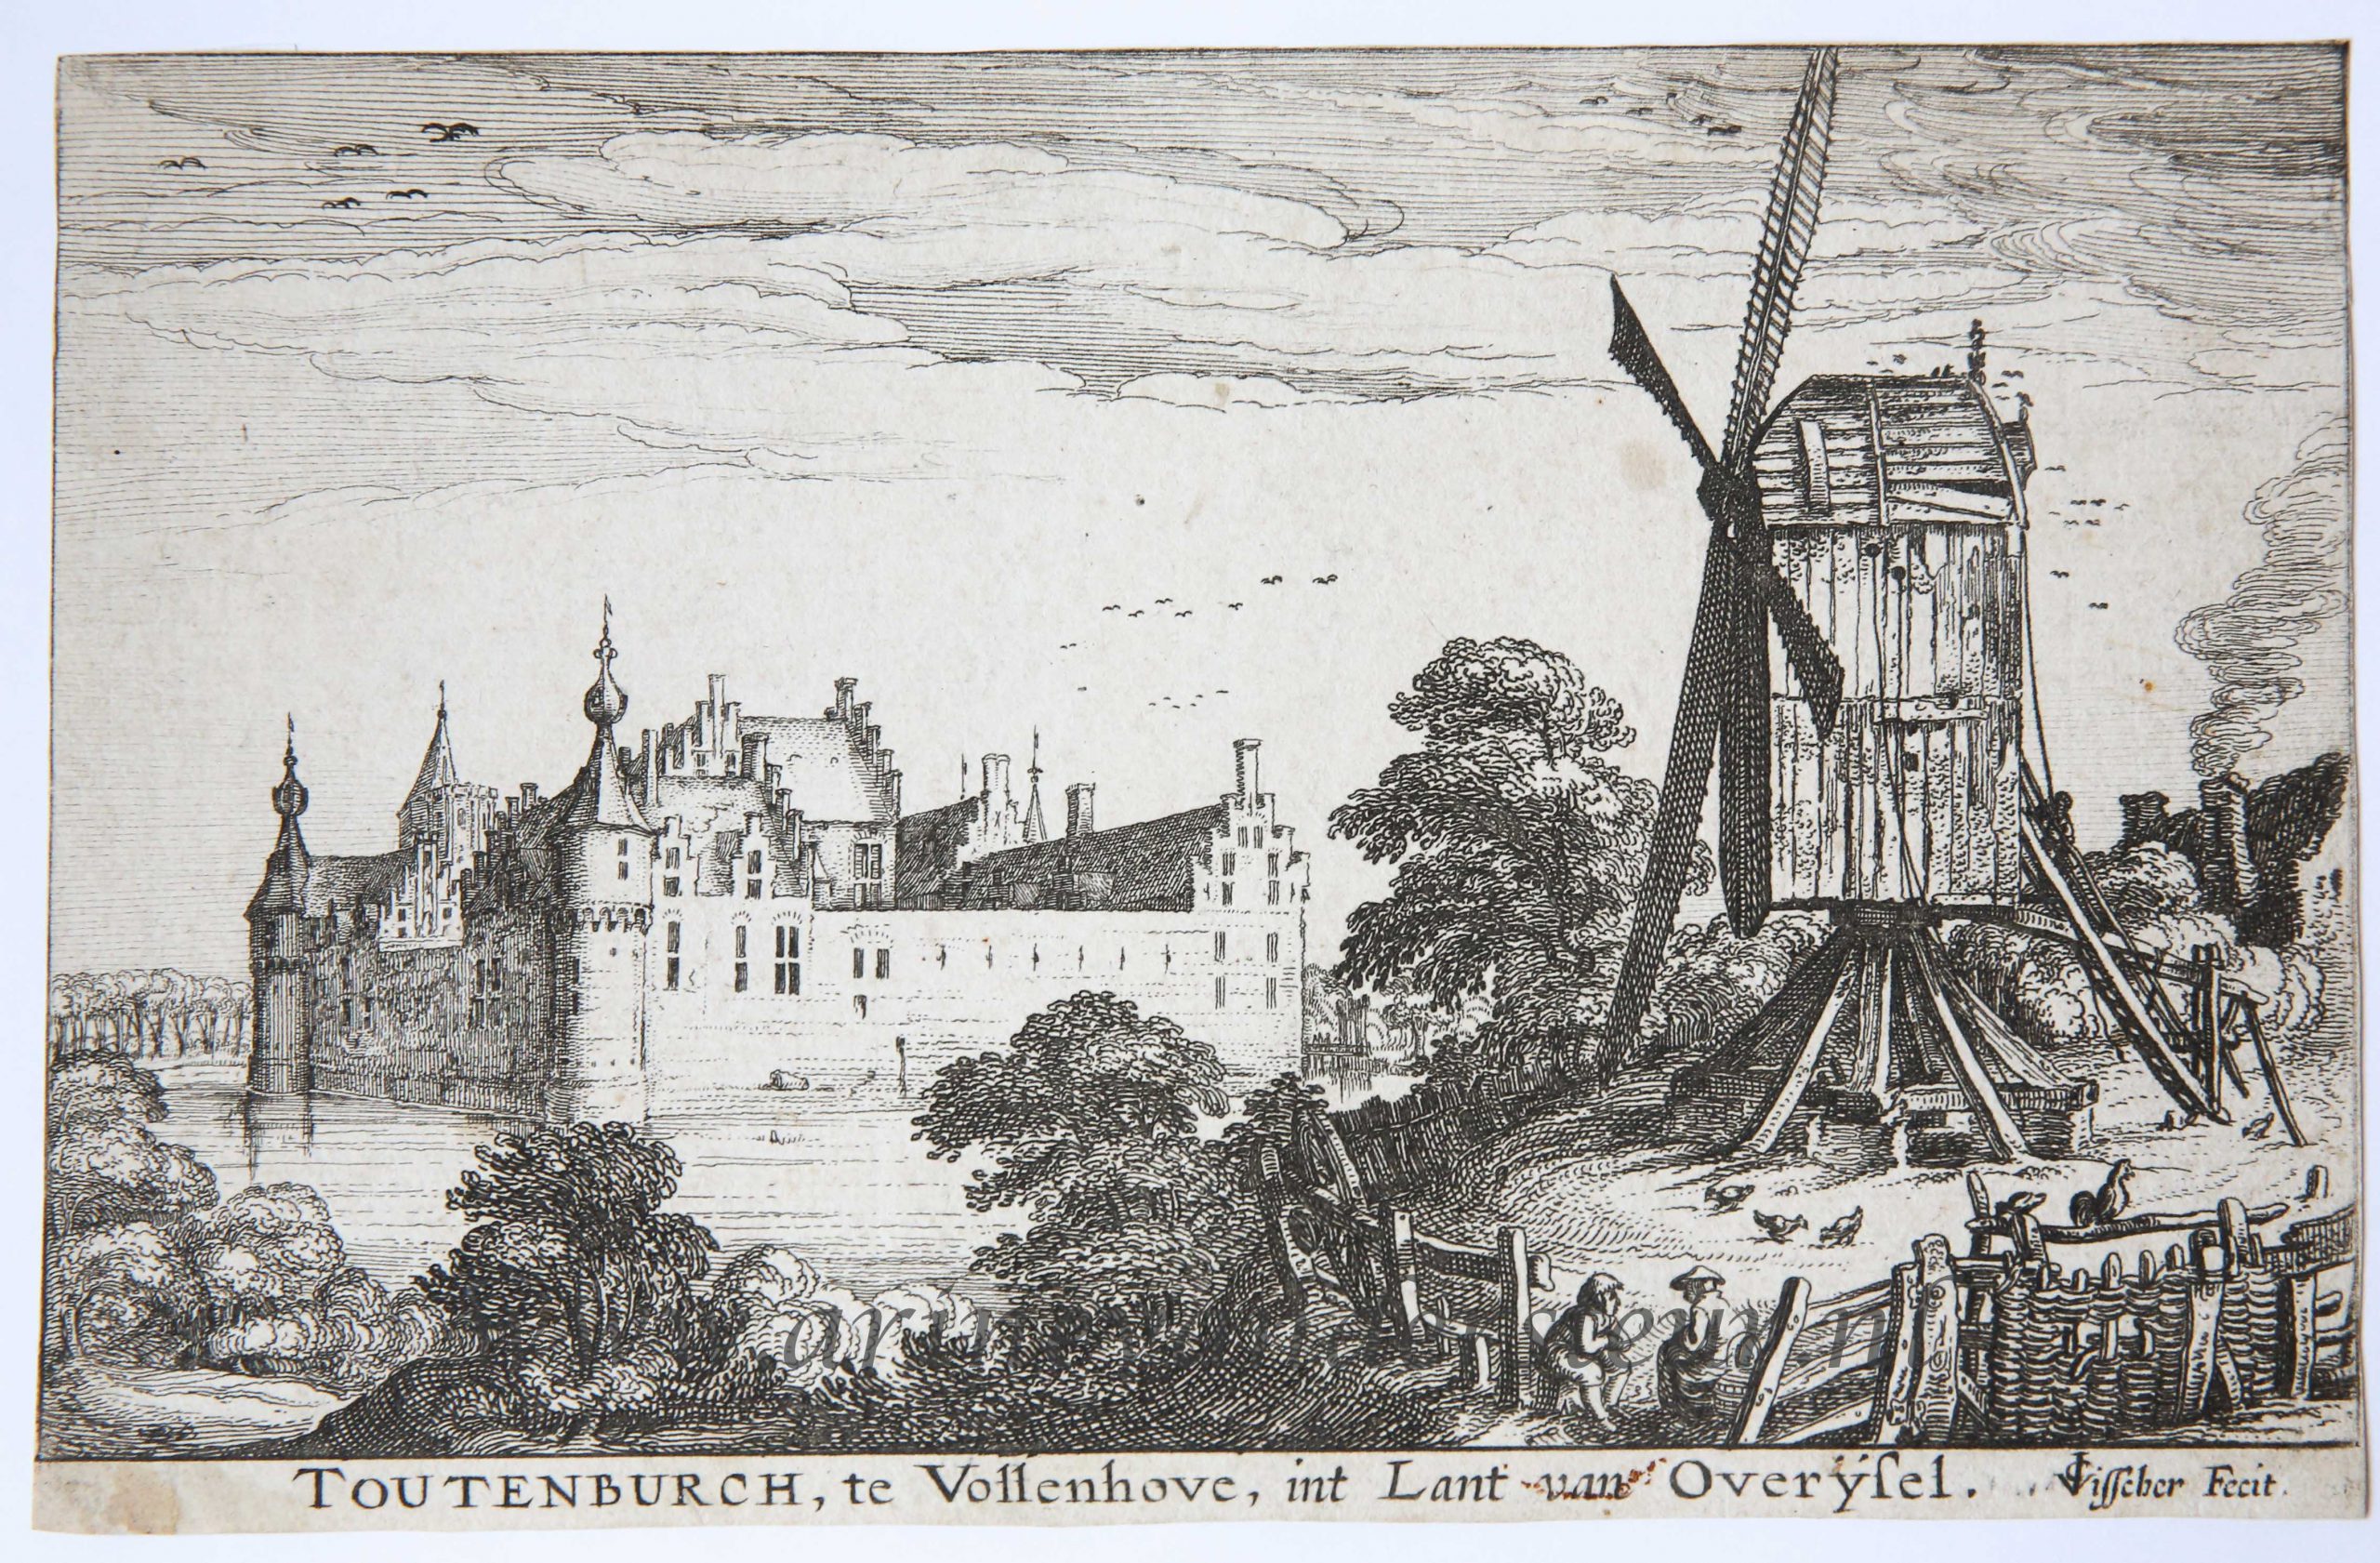 [Antique print, etching] The castle Toutenburgh in Vollenhove/Kasteel Toutenburg in Vollenhove, published 1617.